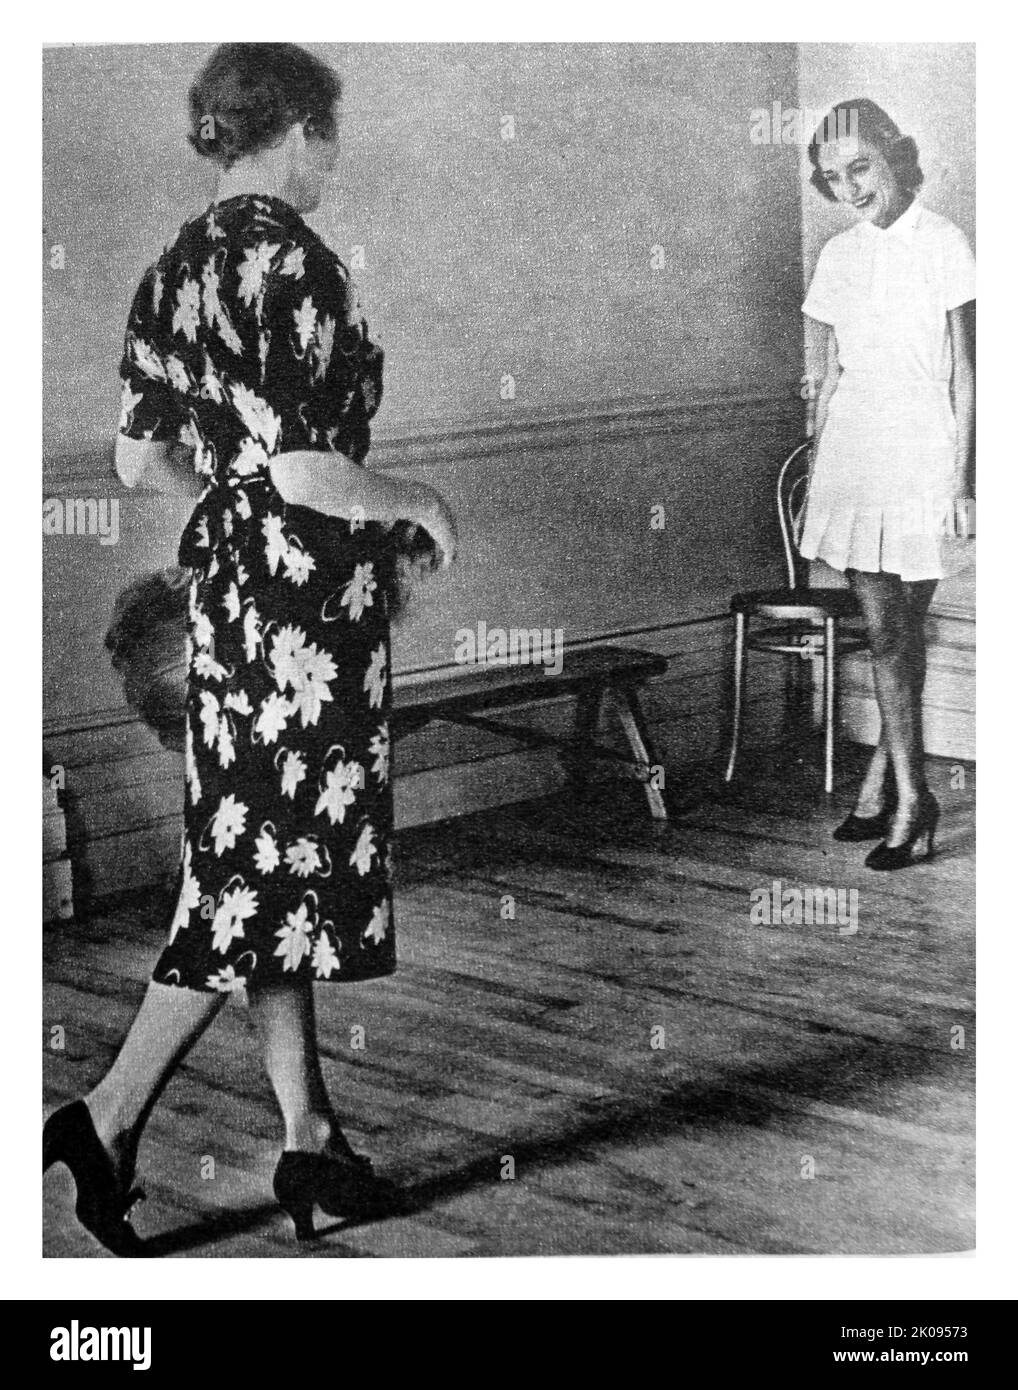 Debutantes imparare a camminare in grande modo con l'insegnante Josephine Bradley. Illustrato il taglio delle notizie. Foto Stock